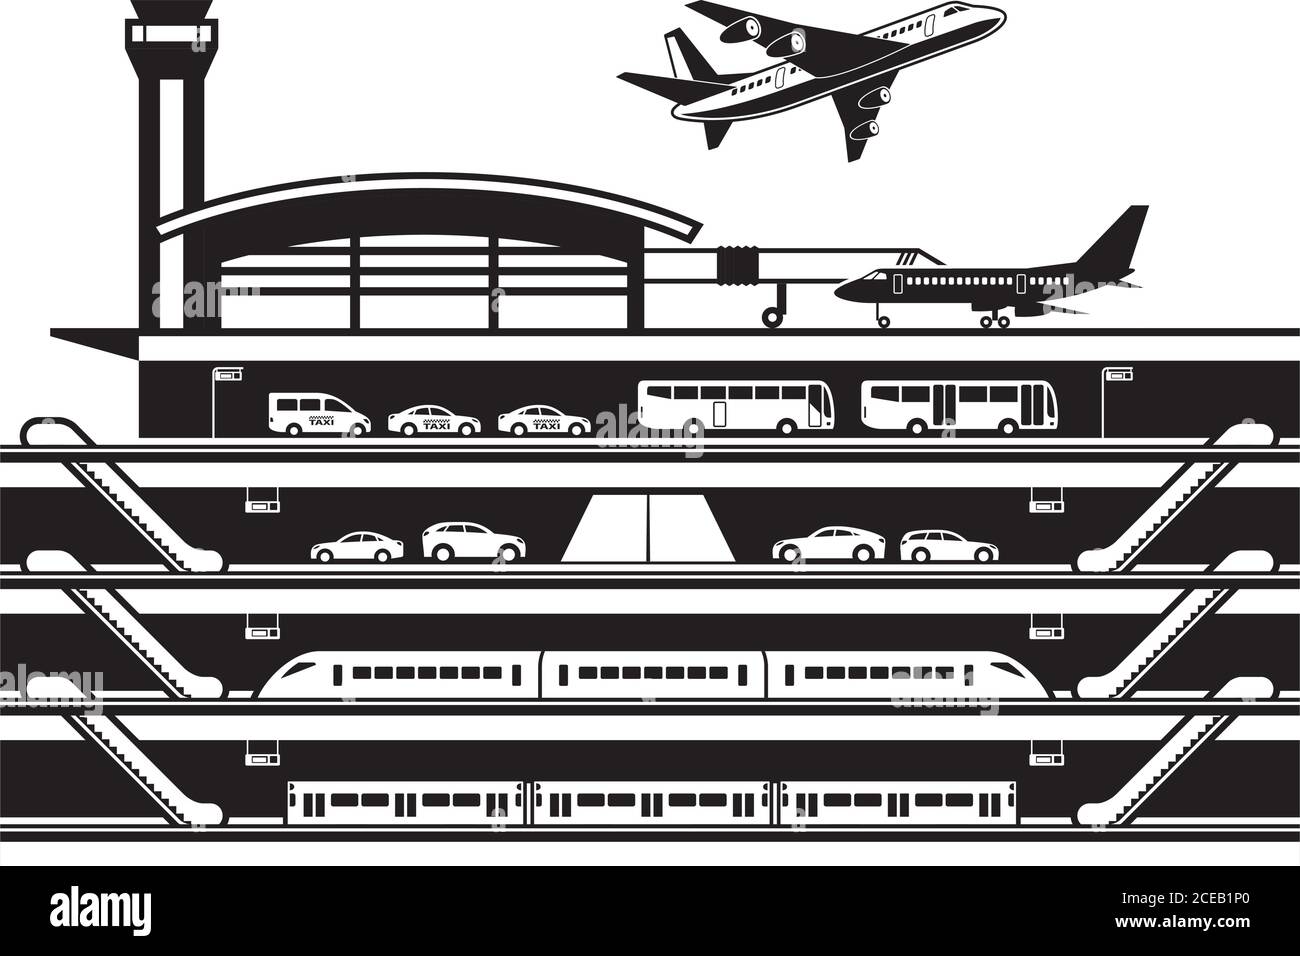 Airport transportation hub – vector illustration Stock Vector